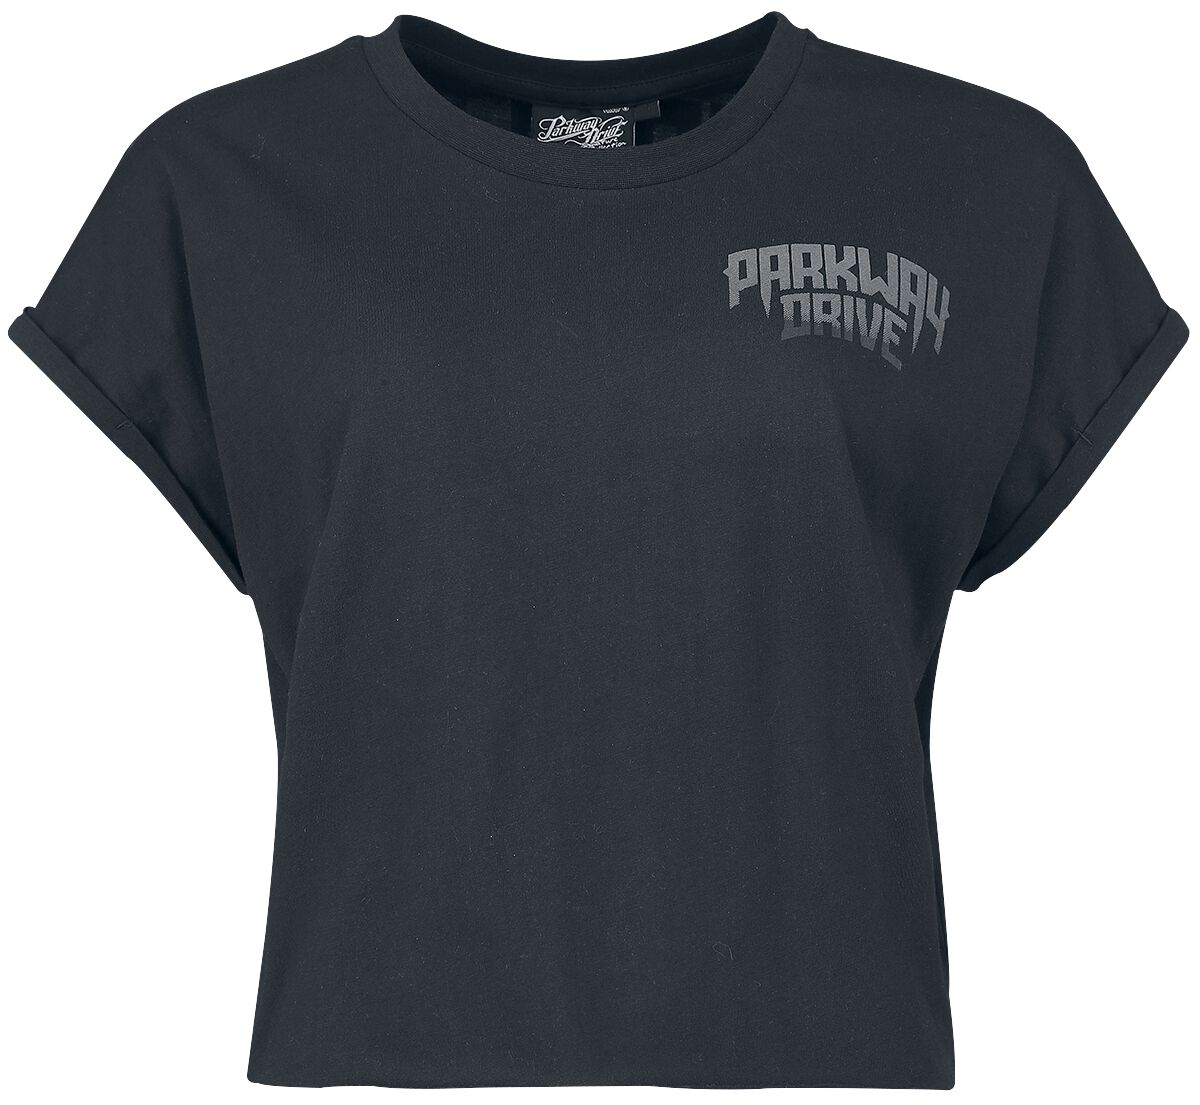 T-Shirt Manches courtes de Parkway Drive - EMP Signature Collection - S à 3XL - pour Femme - noir